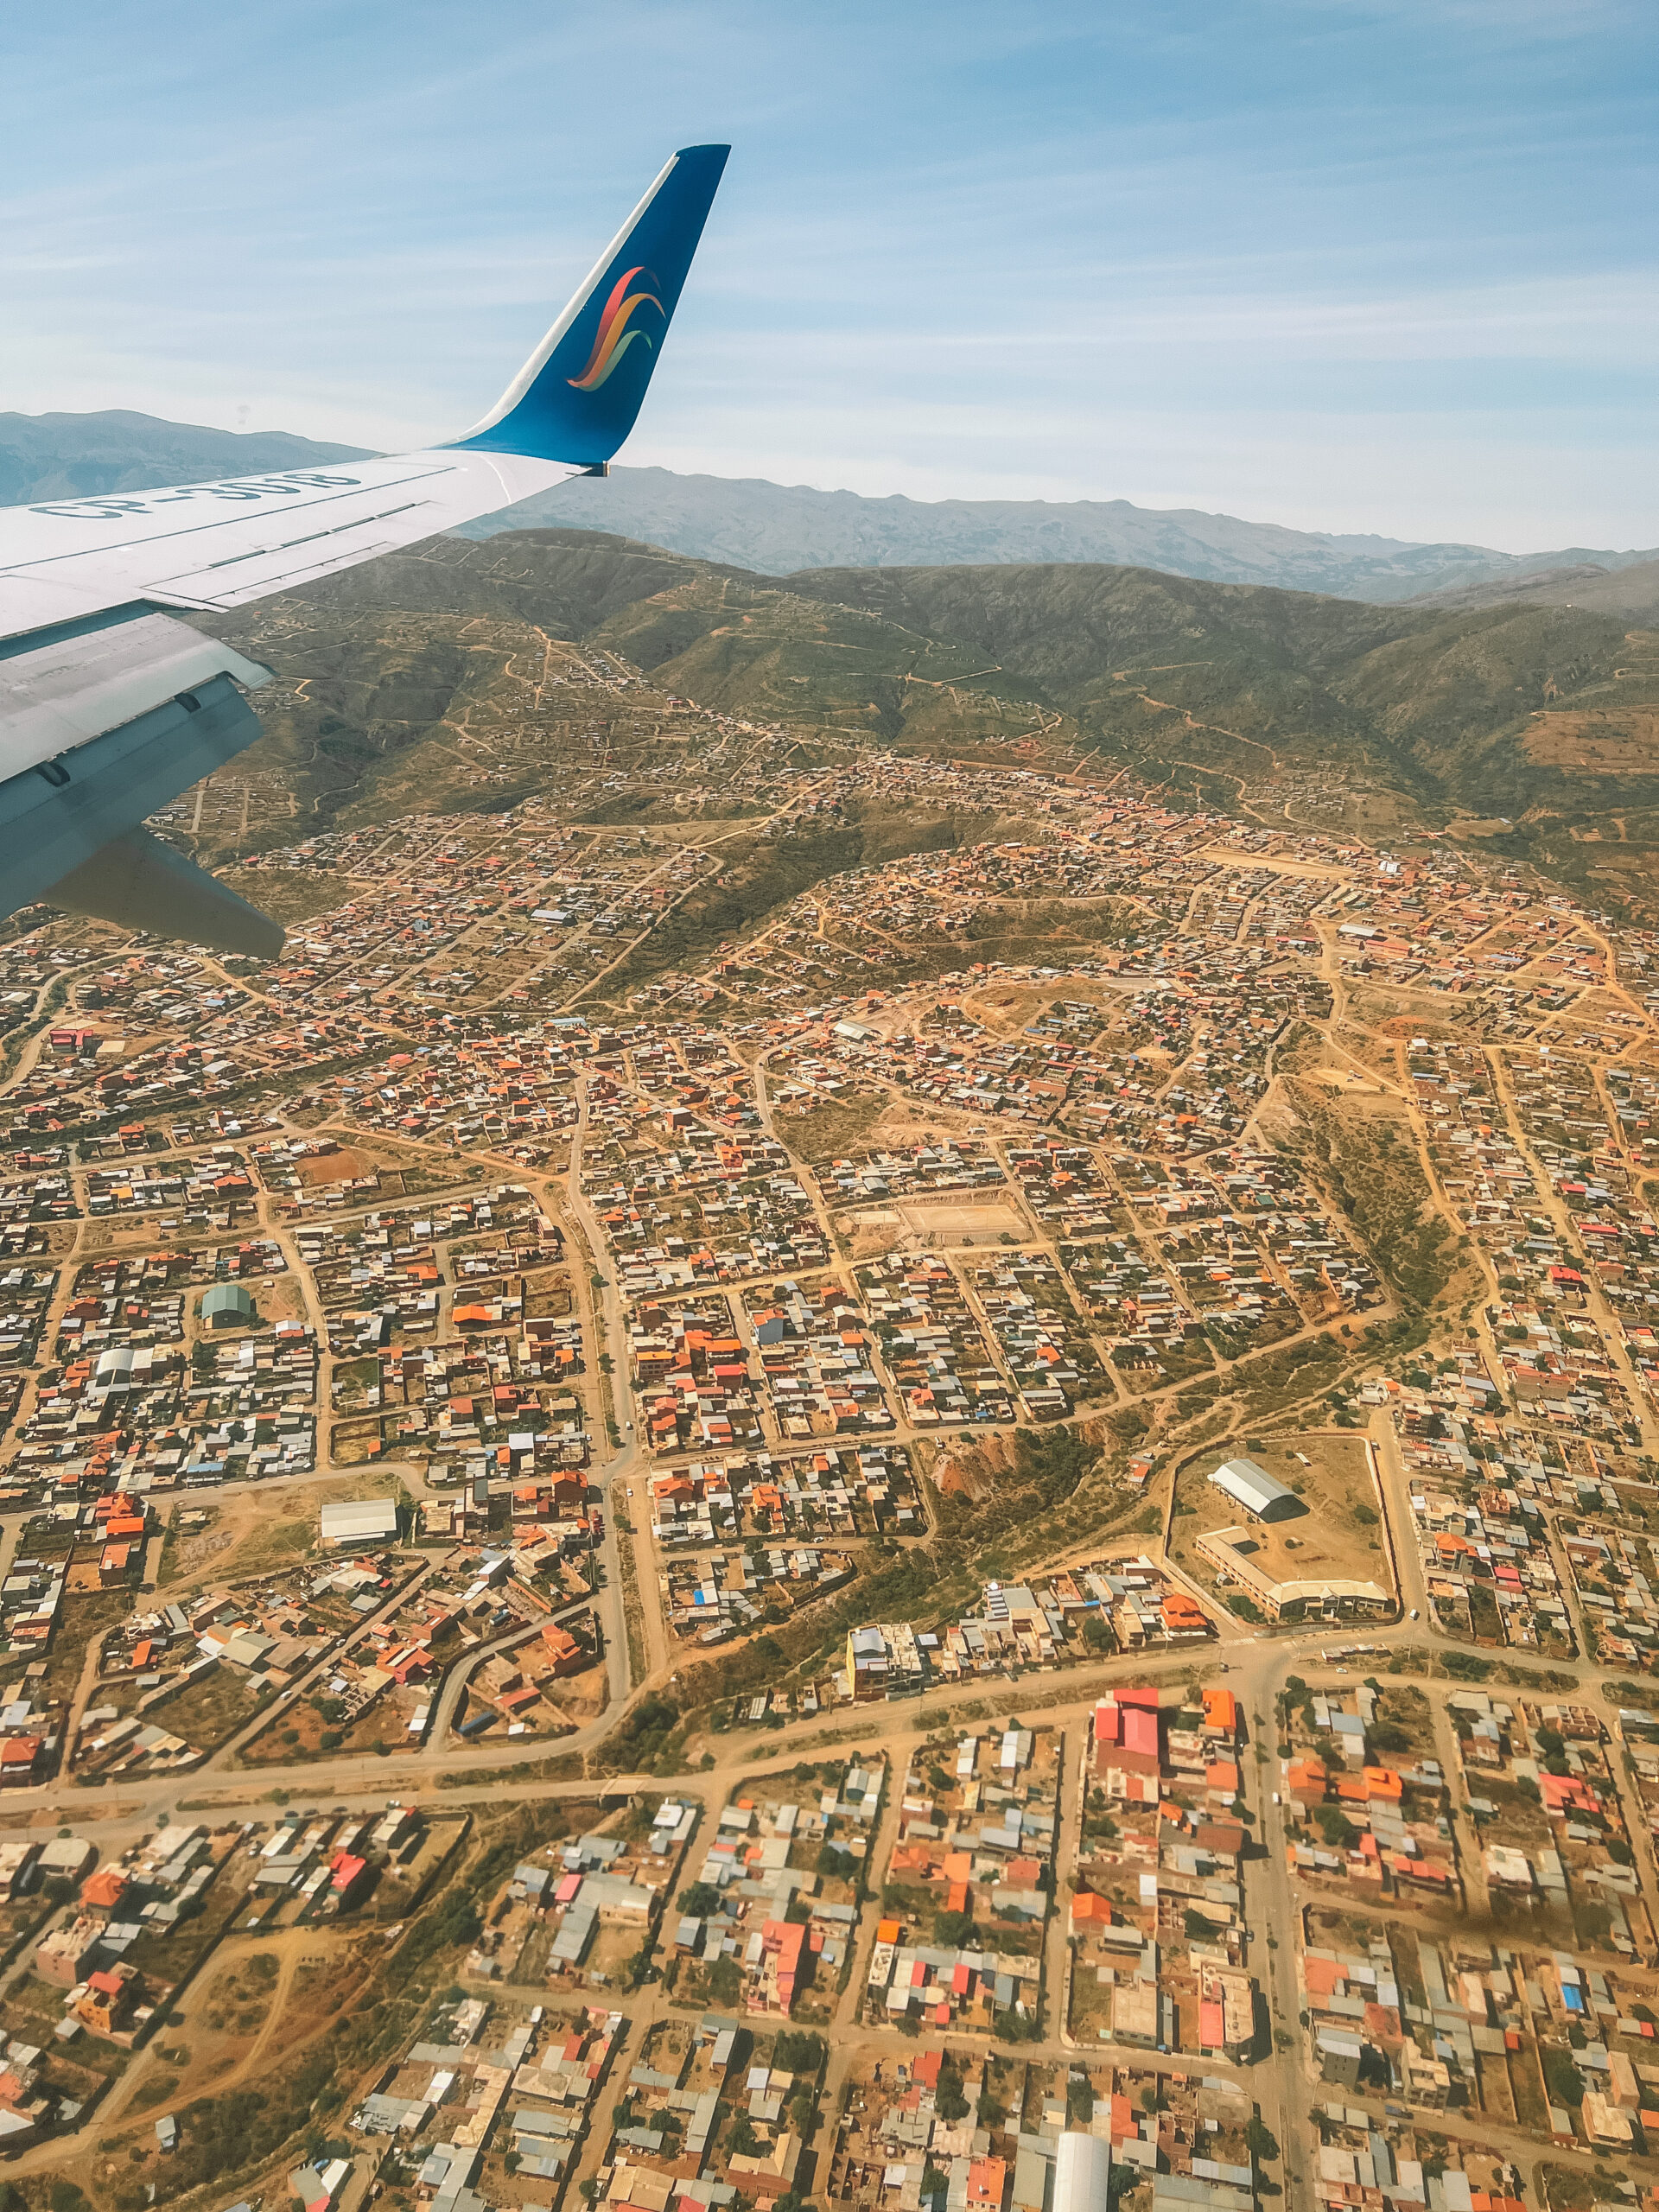 Flying over El Alto, Bolivia